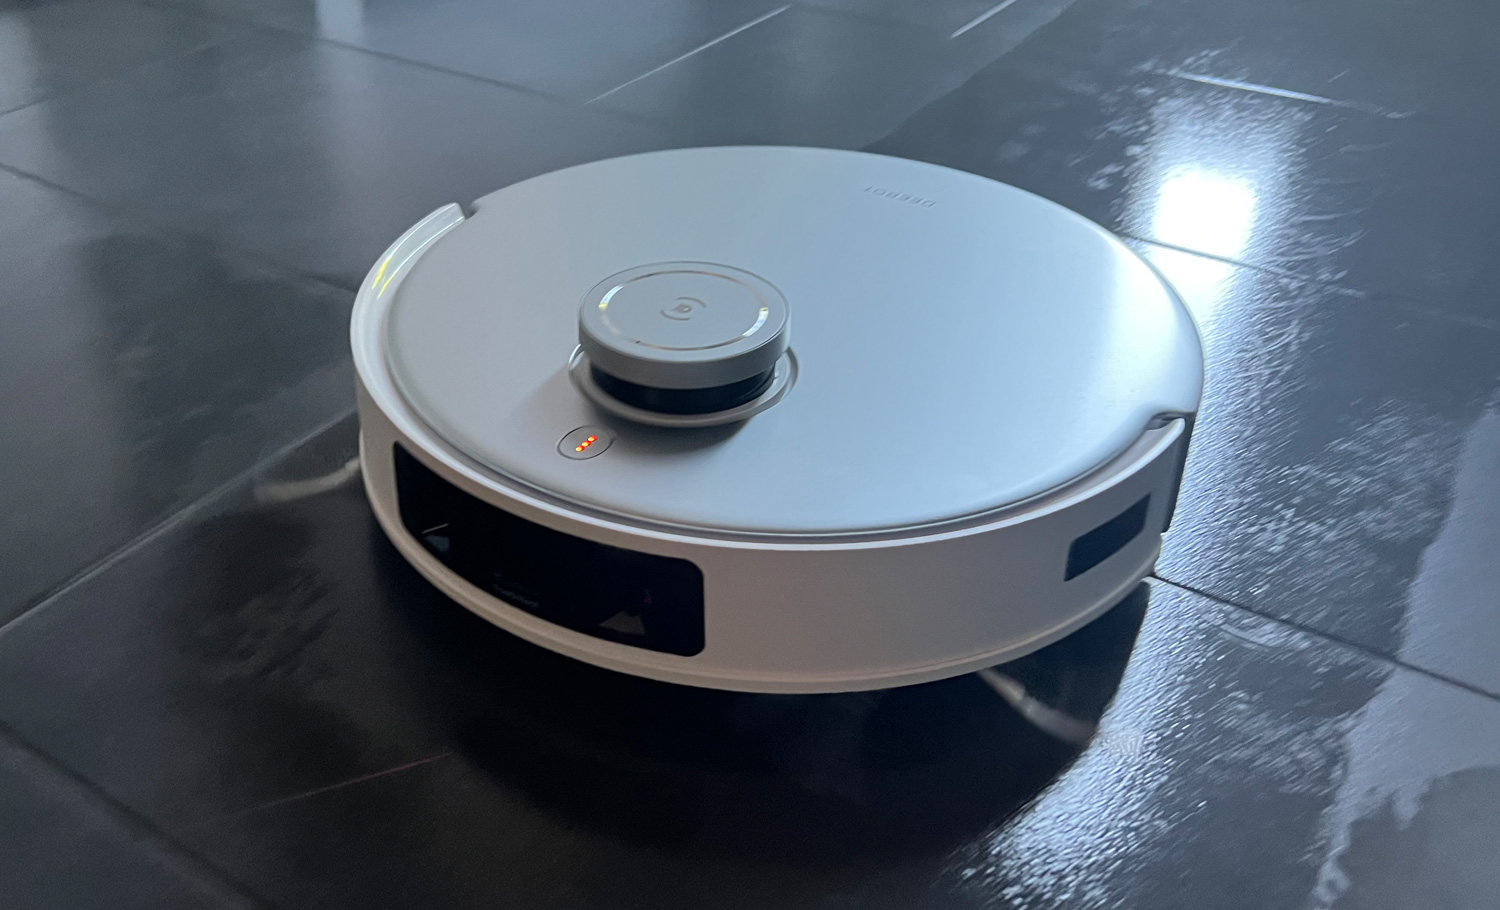 Ecovacs Deebot T20 Omni (Quick Look) - A New Generation Robot Vacuum